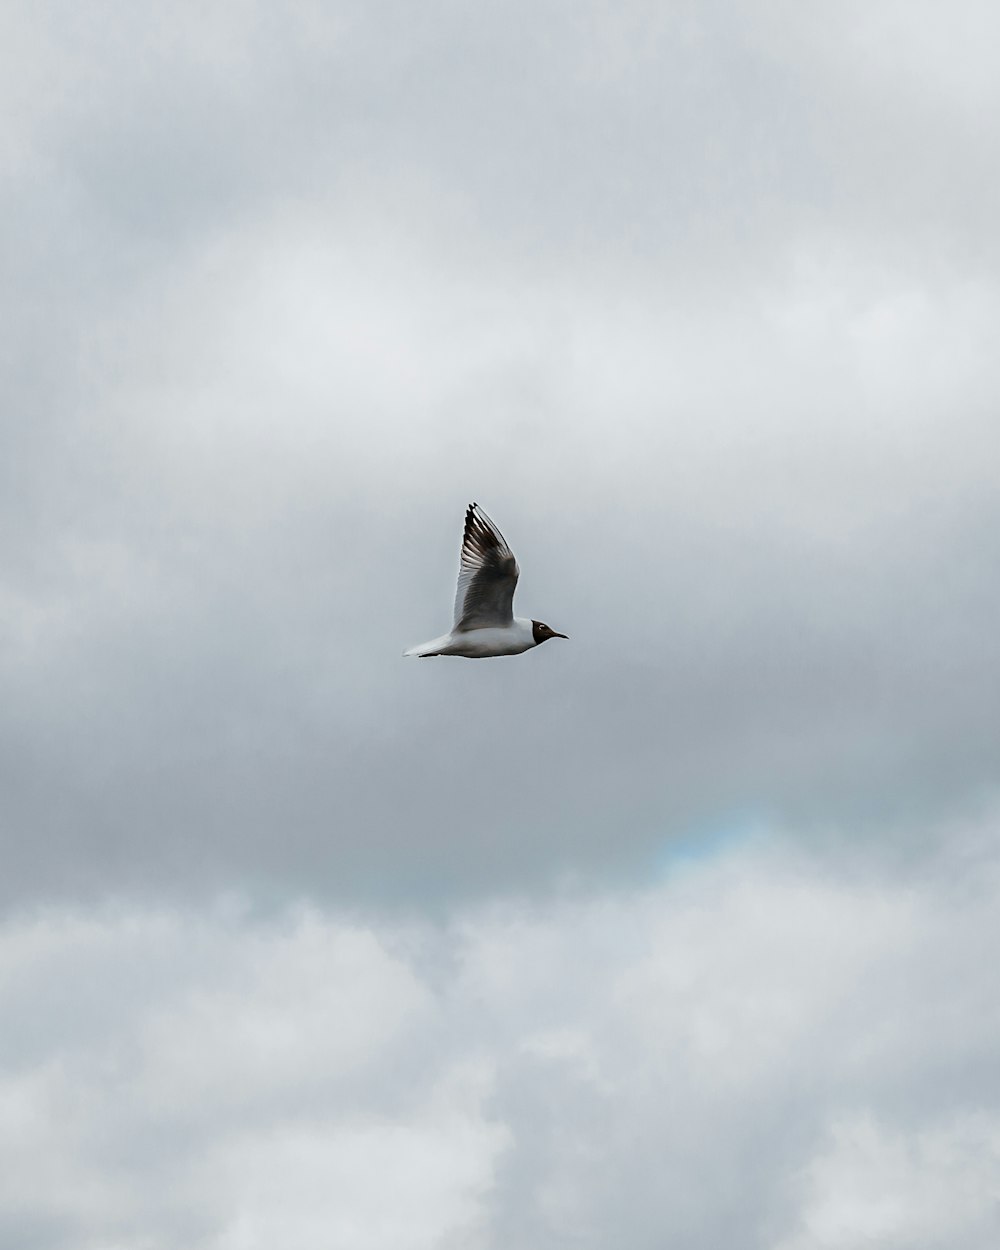 pájaro blanco y negro volando bajo nubes blancas durante el día